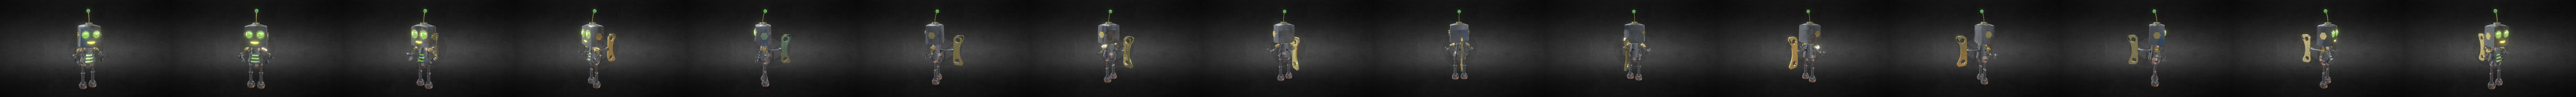 modèle 3D de Robot Ninja Personnage Low-Poly - TurboSquid 1758275